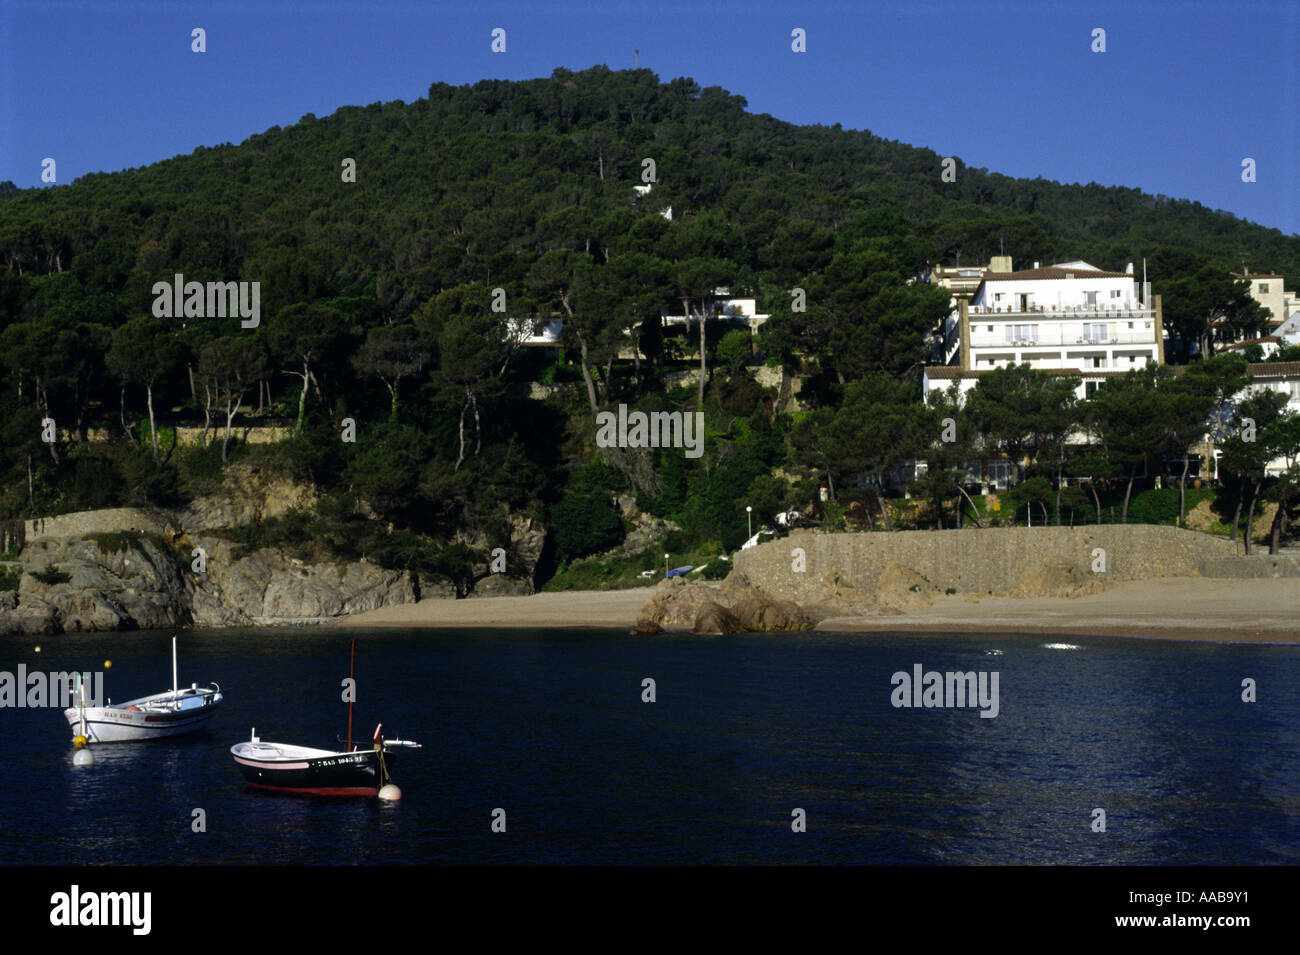 Vue générale des collines autour de la plage de Tamariu, Costa Brava Espagne Banque D'Images